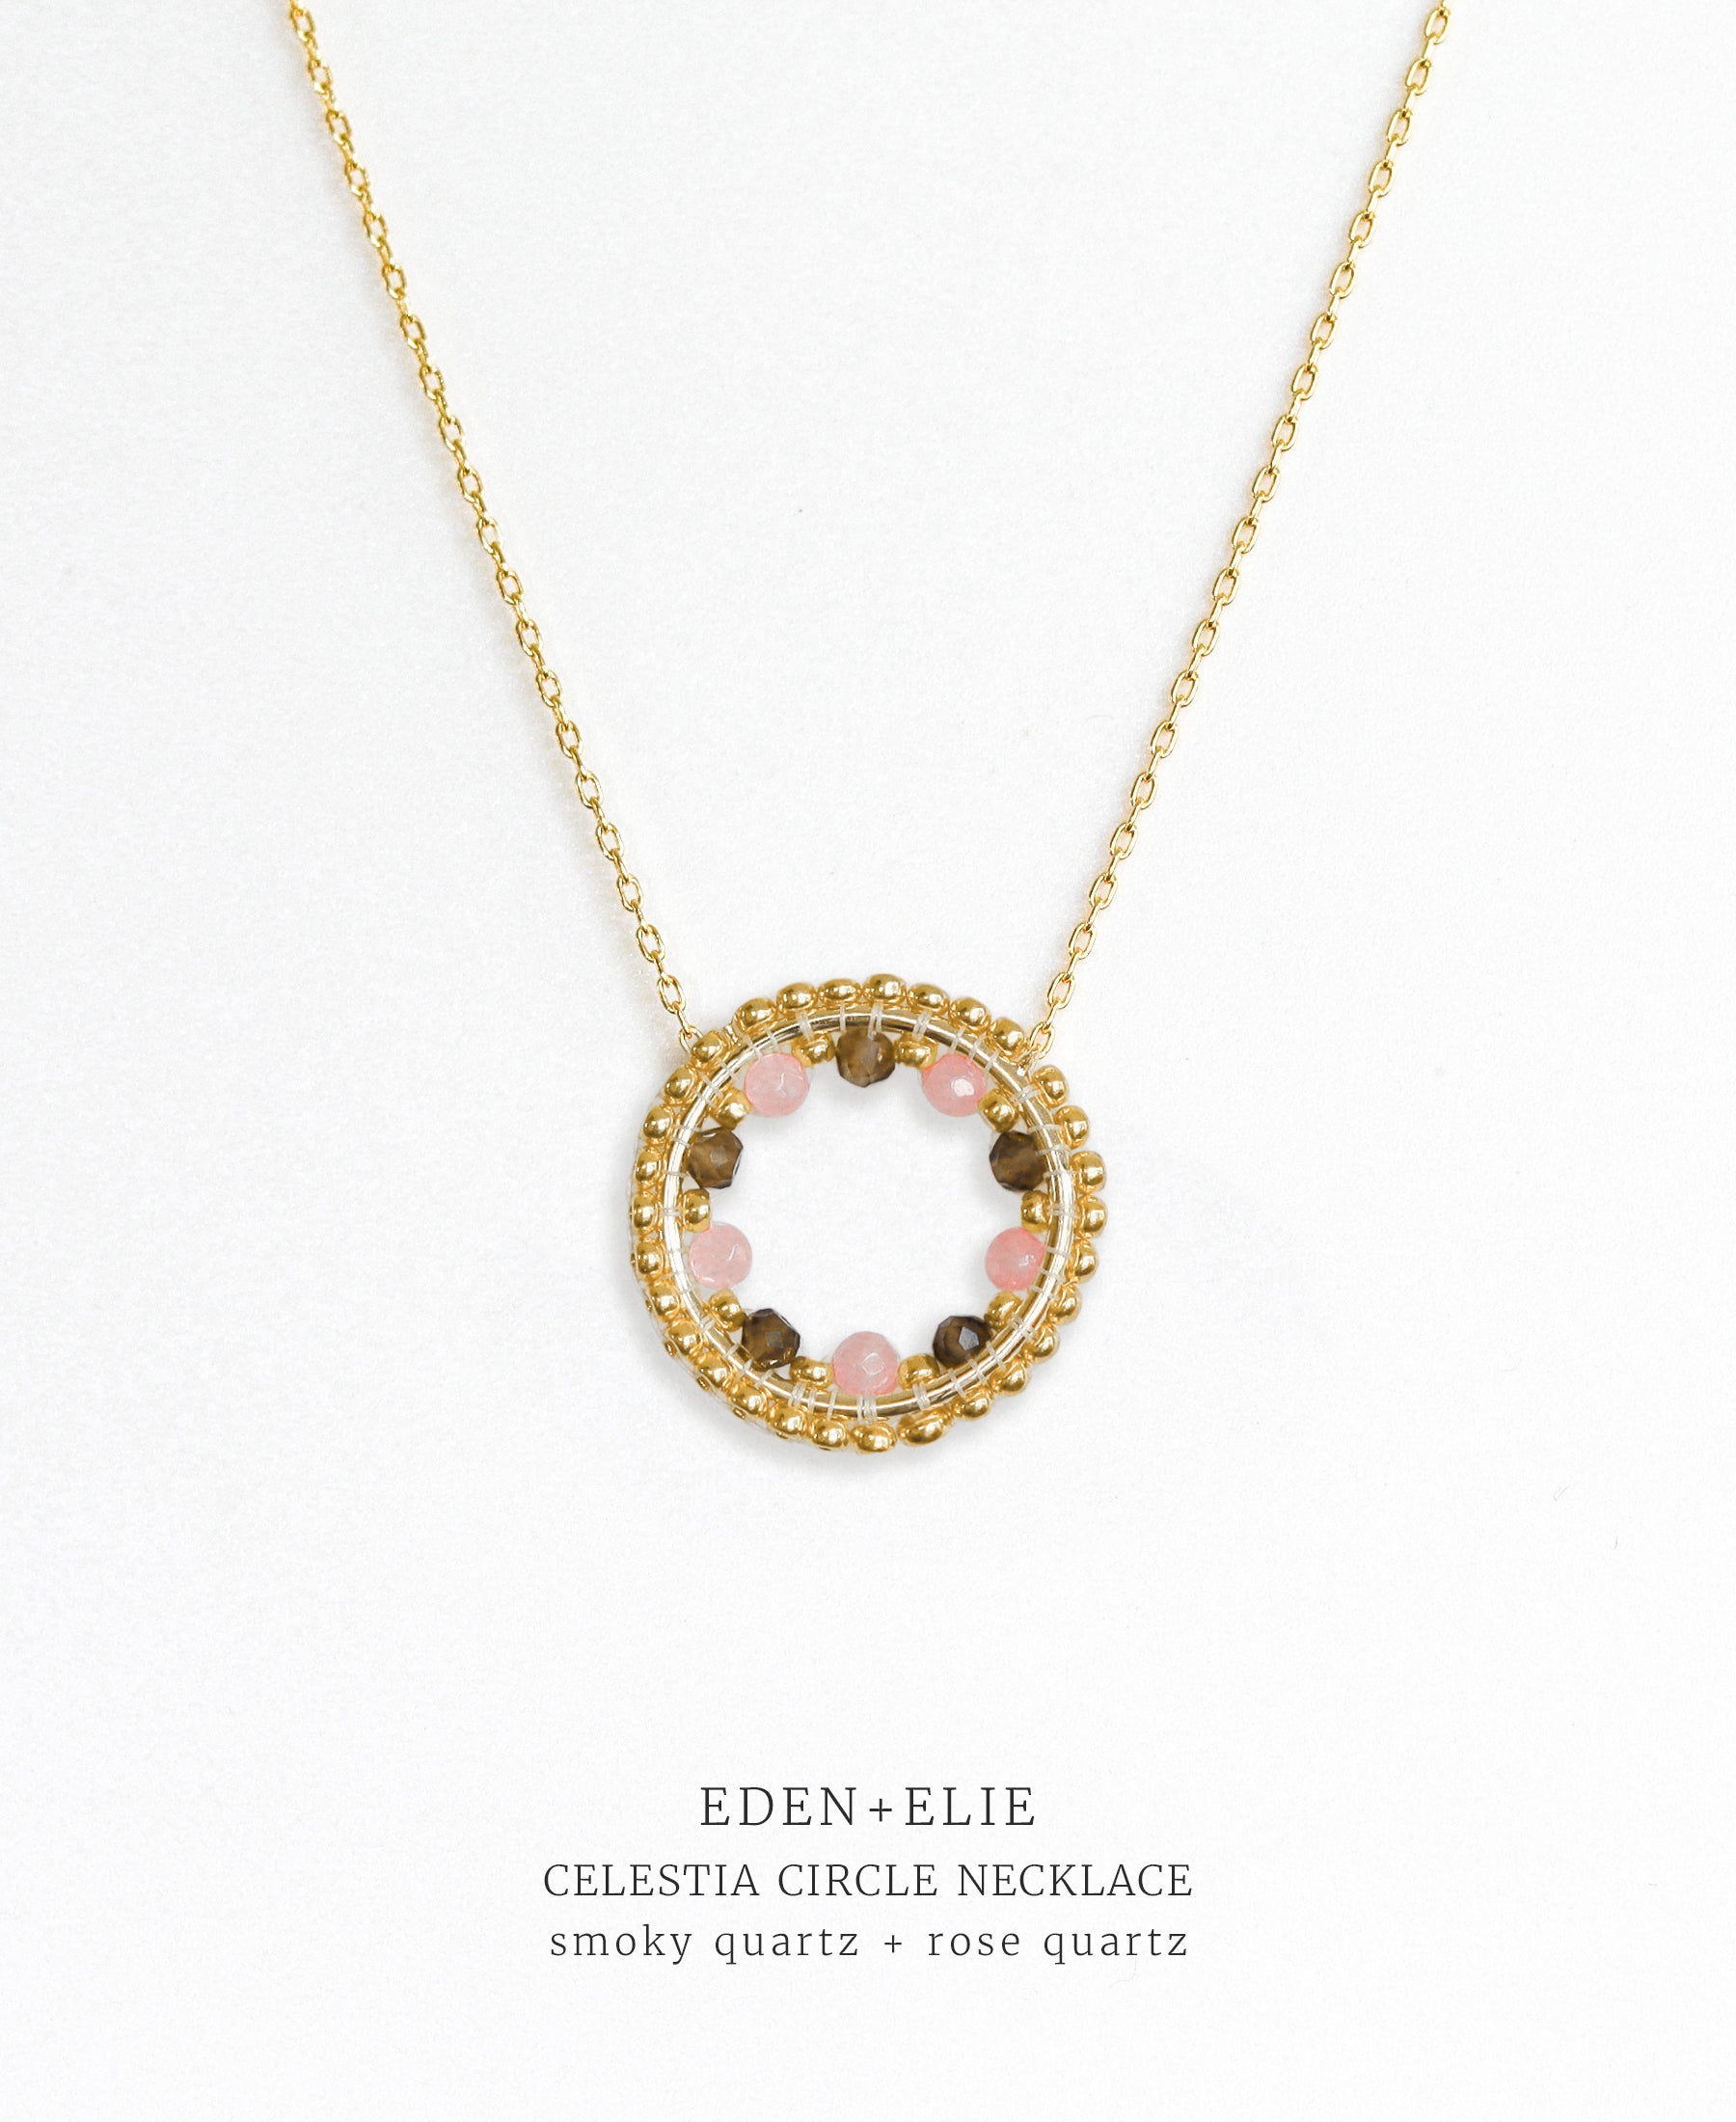 EDEN + ELIE Celestia Circle Necklace - Smoky Quartz + Rose Quartz